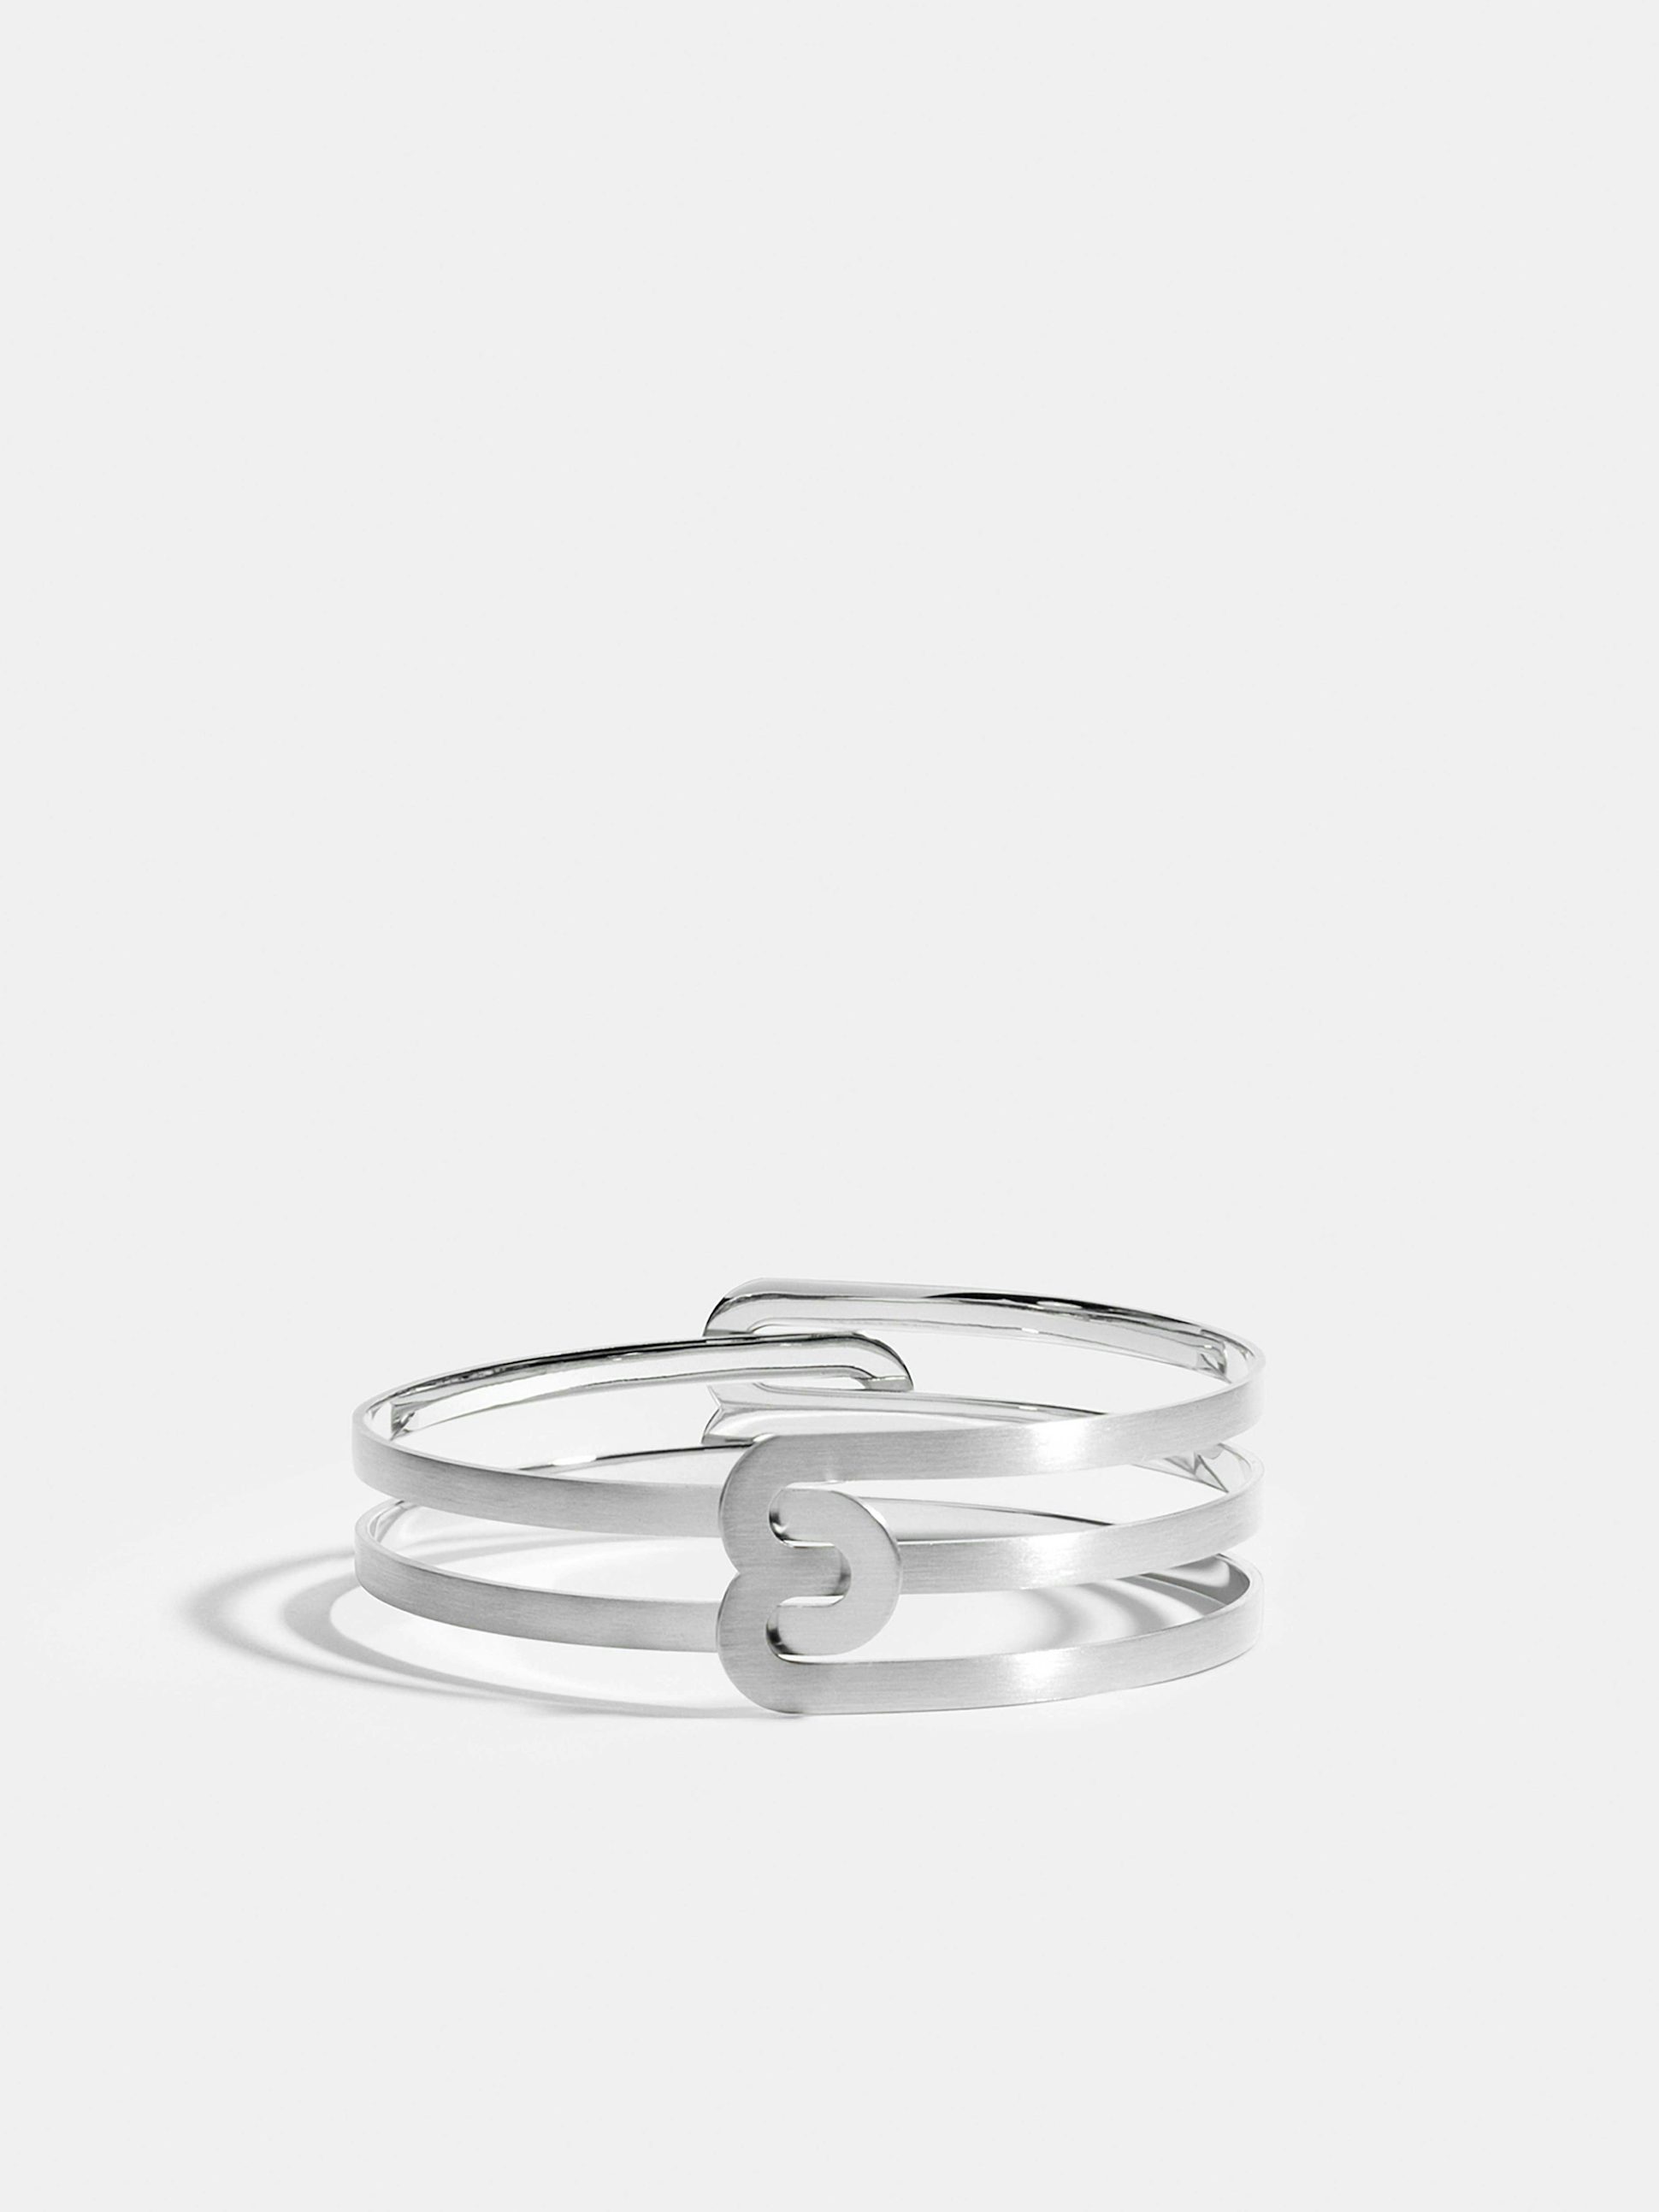 Bracelet Étreintes en Or blanc éthique 18 carats certifié Fairmined composé d'un demi-bracelet simple finition brossée et d'un demi-bracelet double finition brossée.